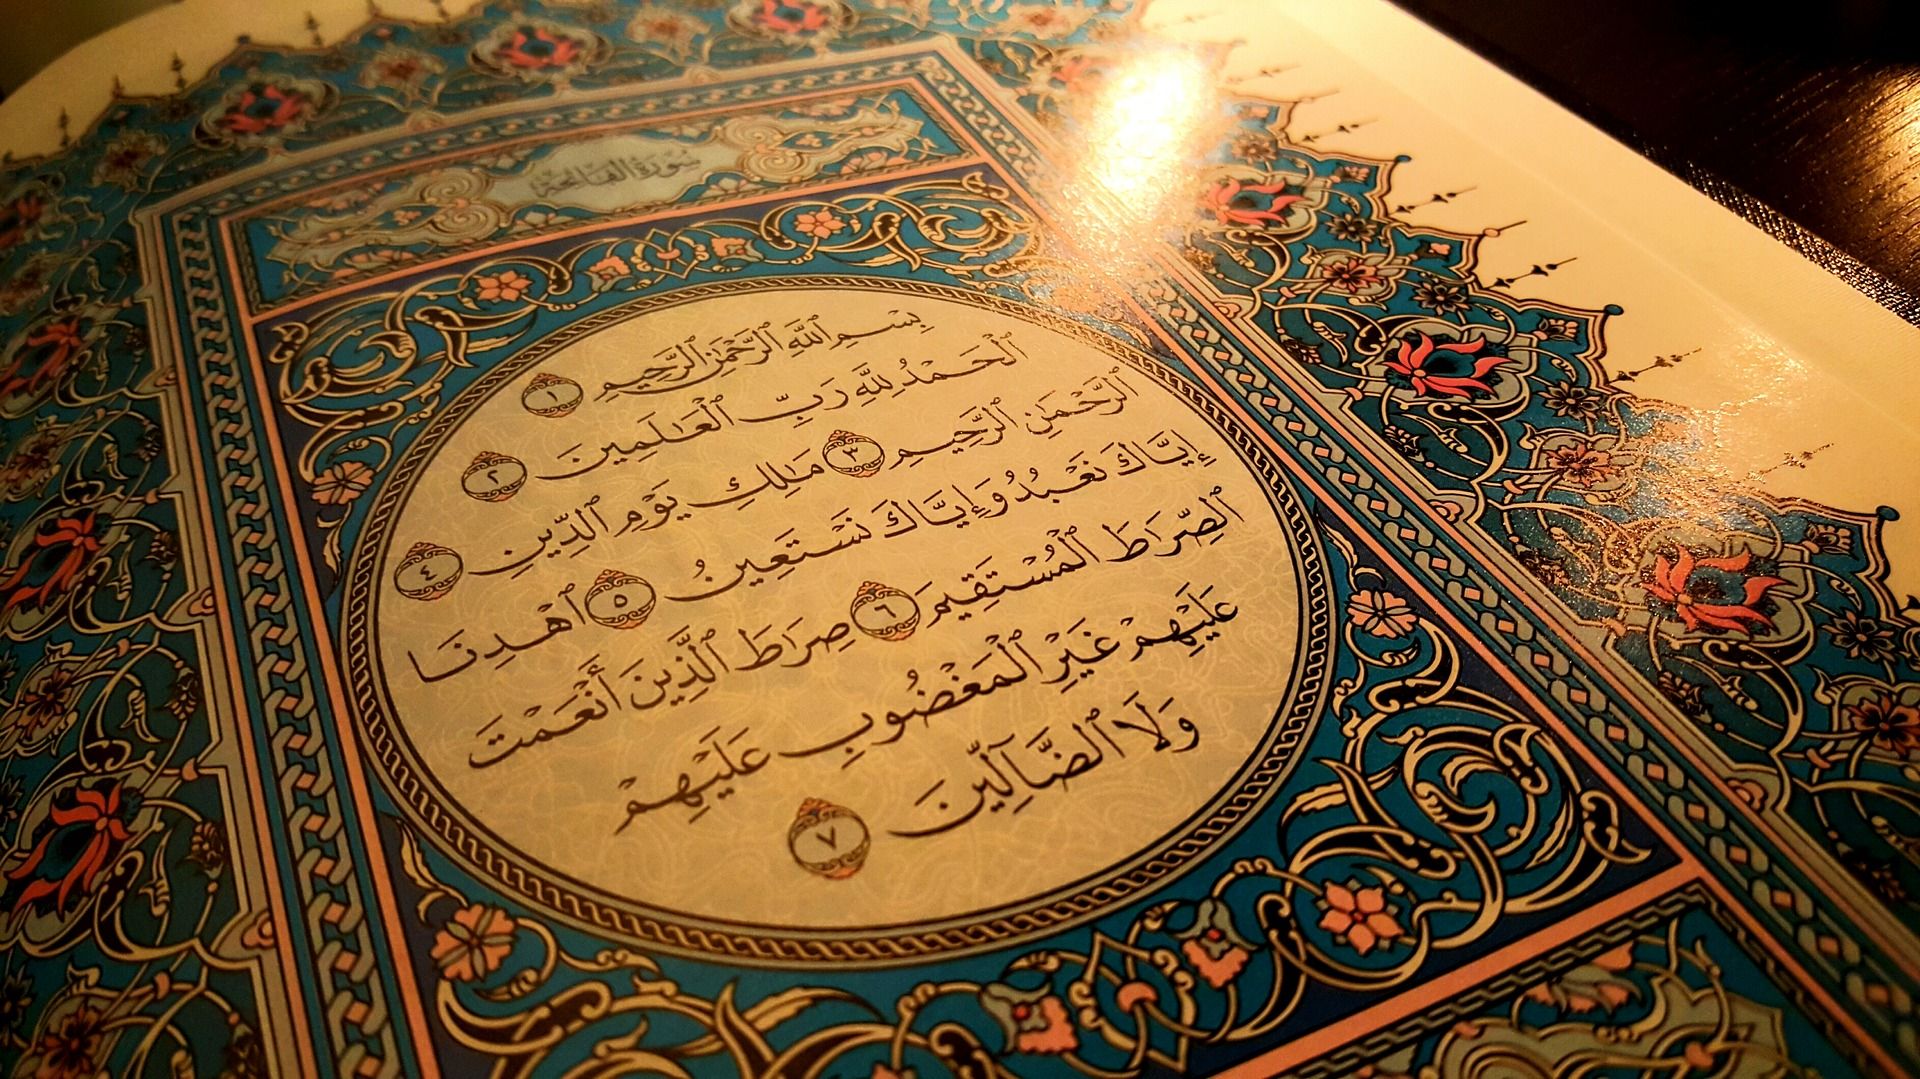 Baca di malam Jumat, Surat Yasin full ayat 1-83 lengkap terjemah, tulisan arab, latin, mudah dibaca dan dipahami